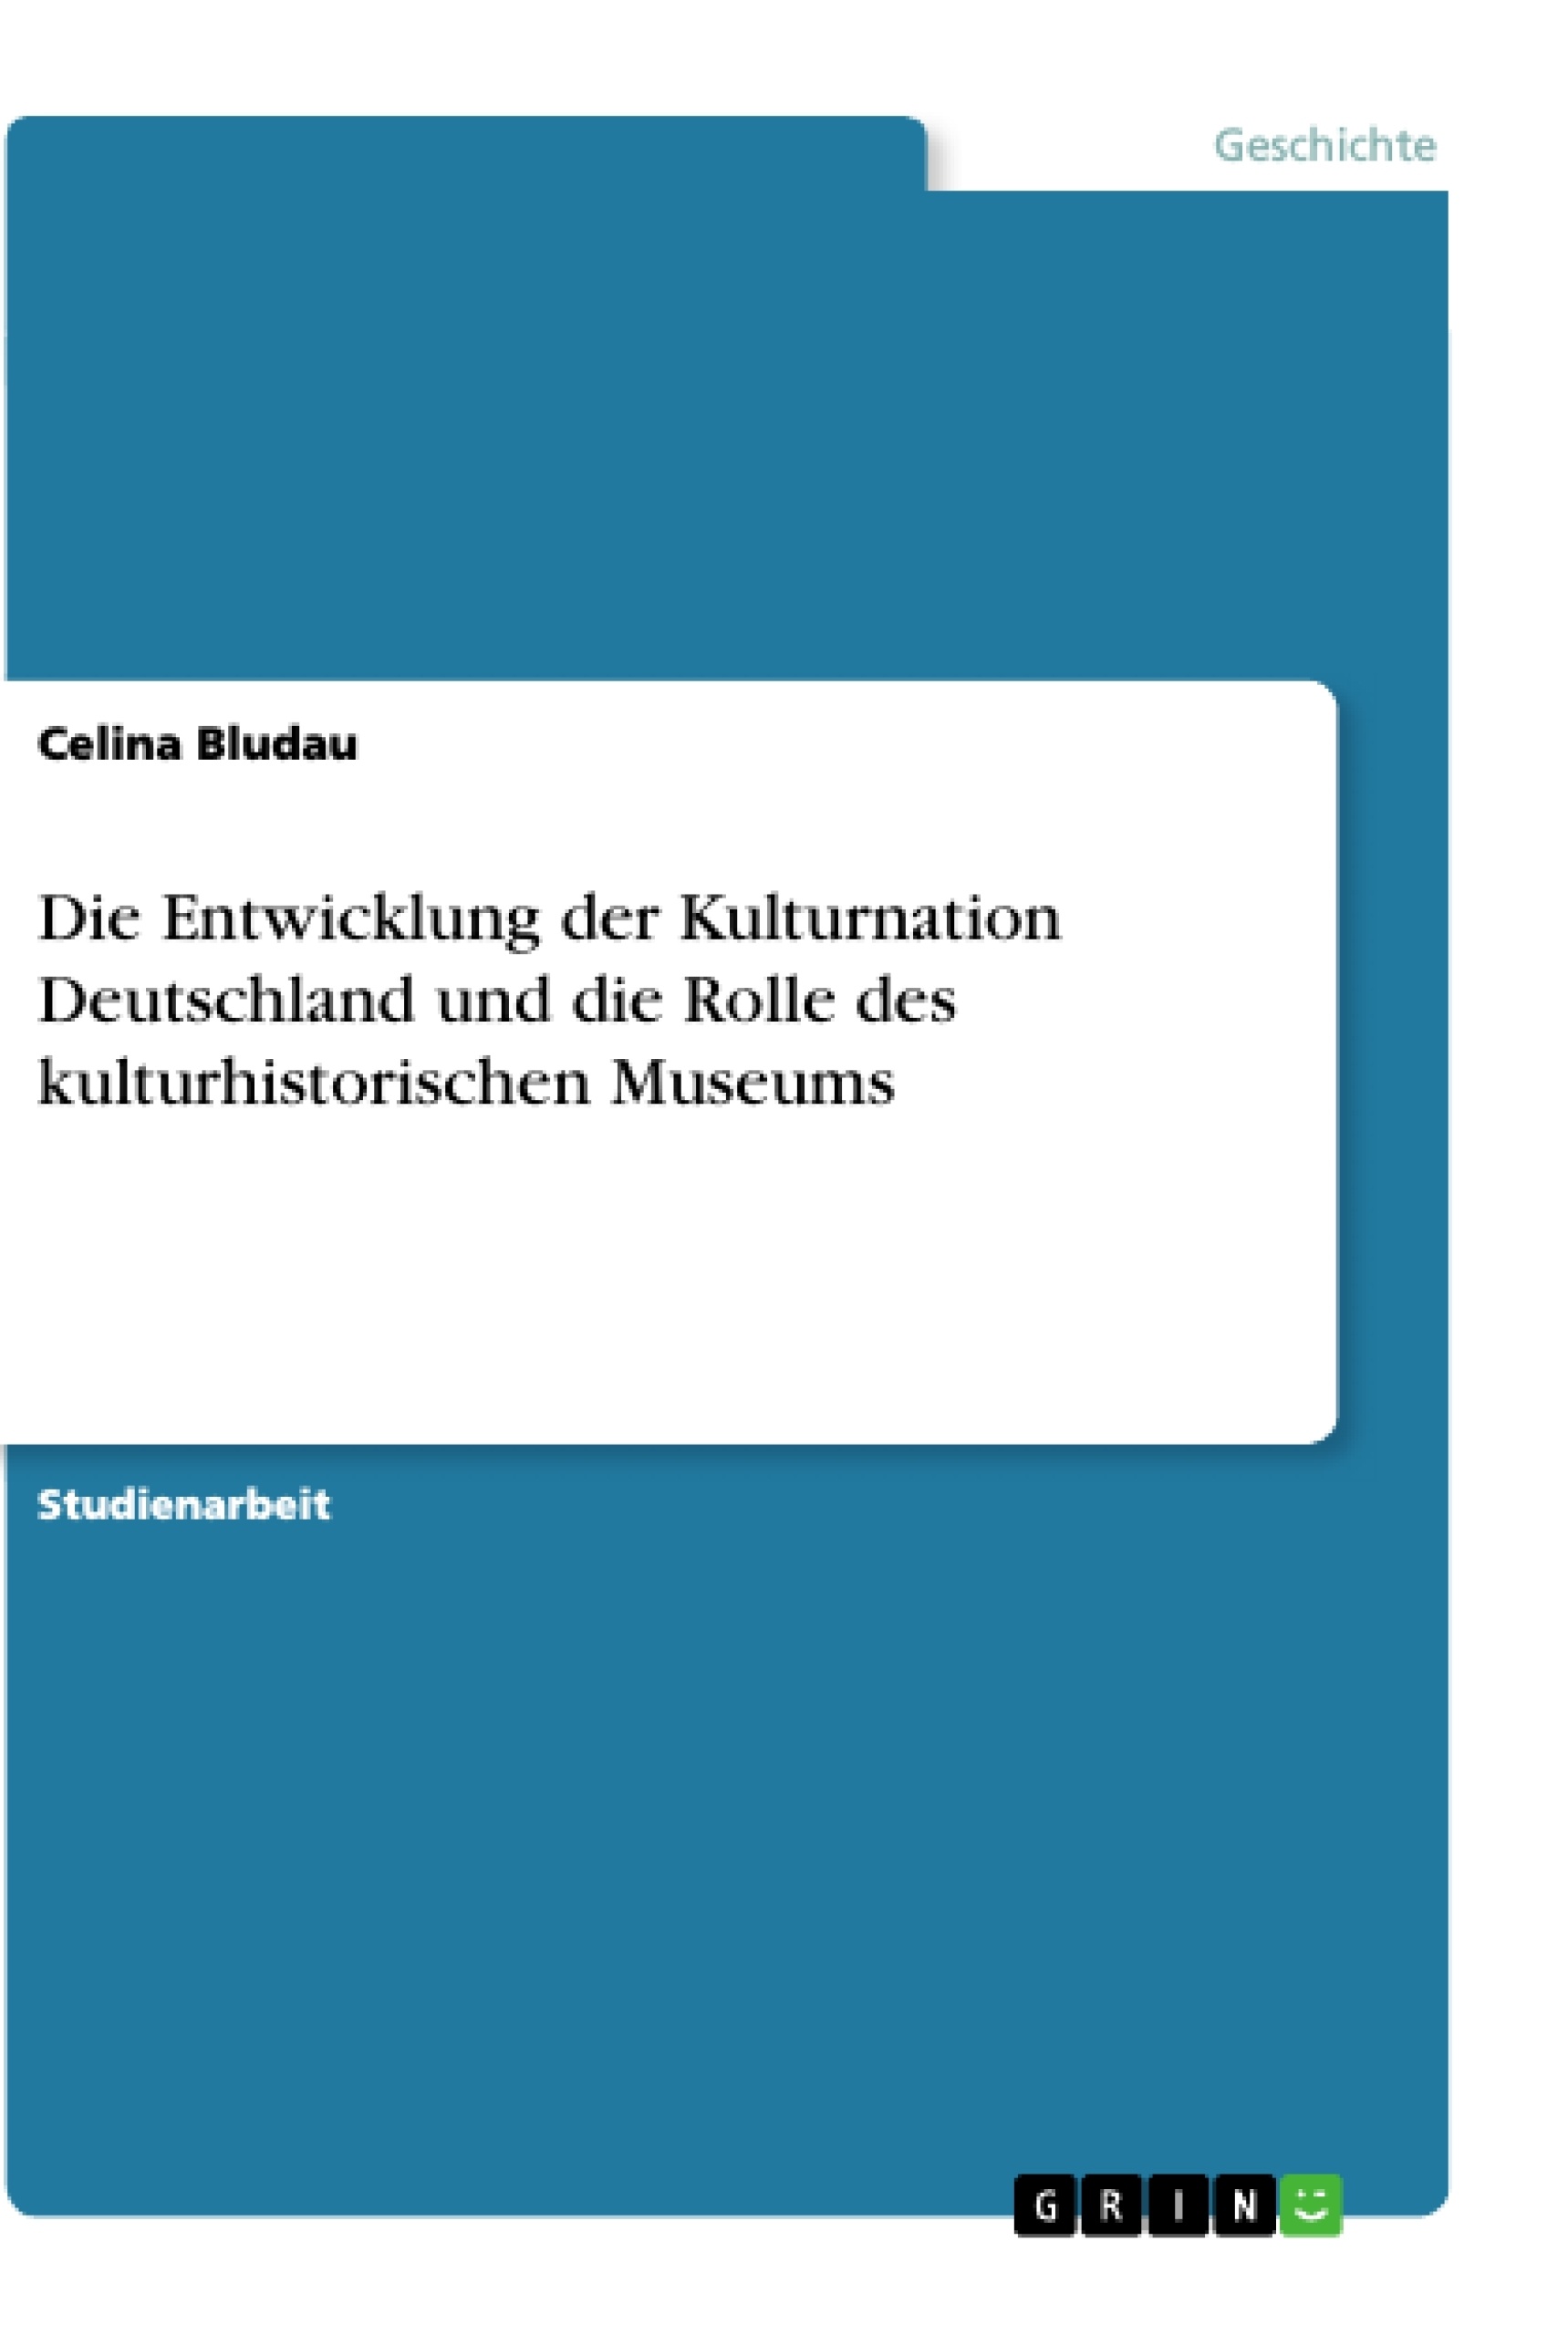 Title: Die Entwicklung der Kulturnation Deutschland und die Rolle des kulturhistorischen Museums